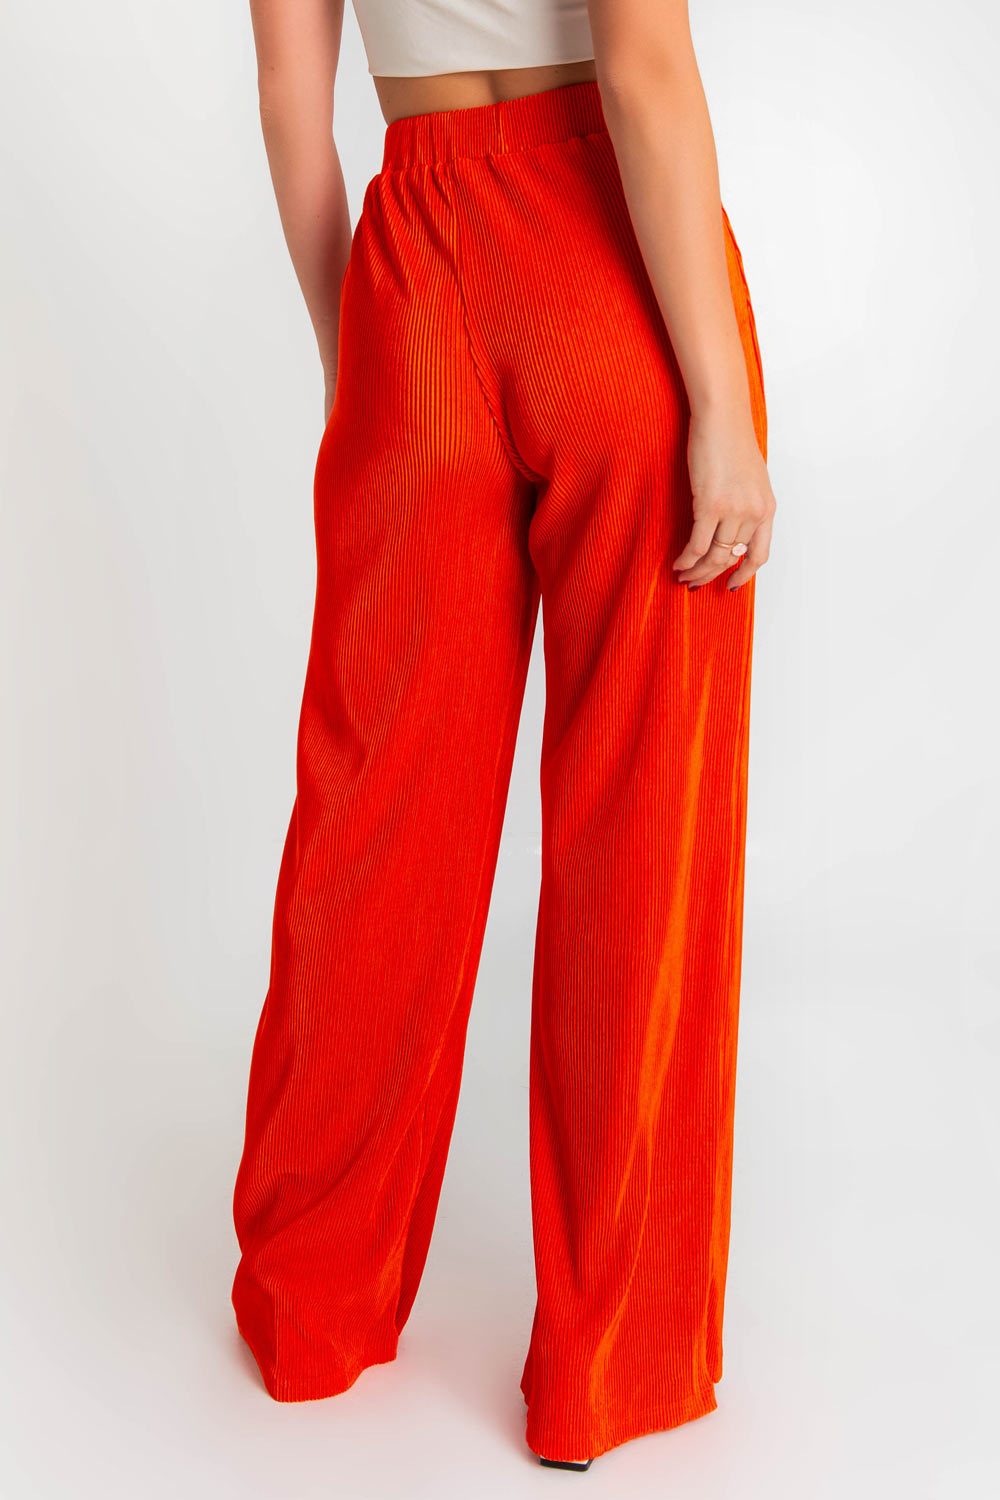 Pantalón plisado naranja